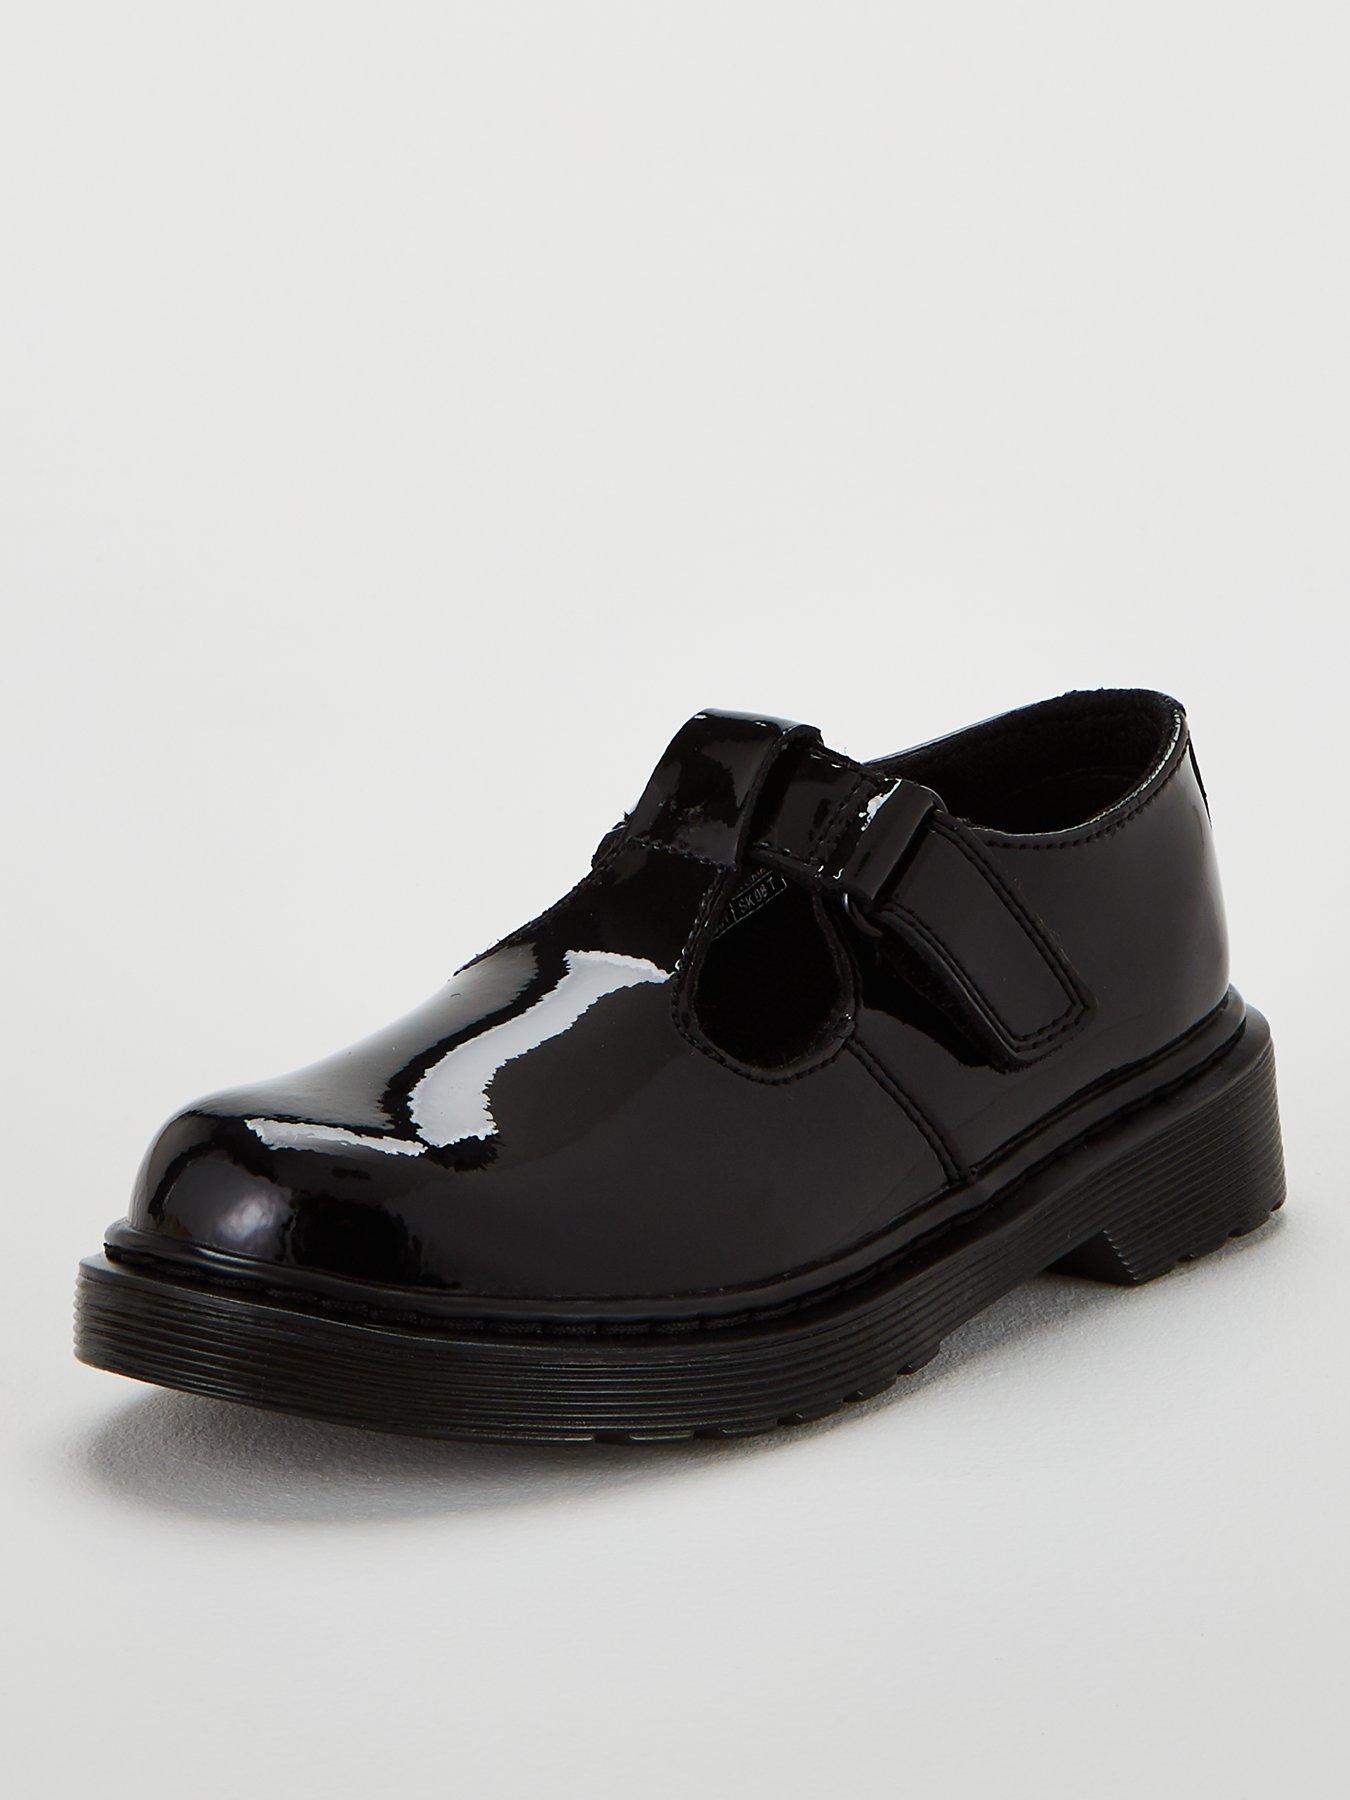 Dr martens | School shoes | Shoes 